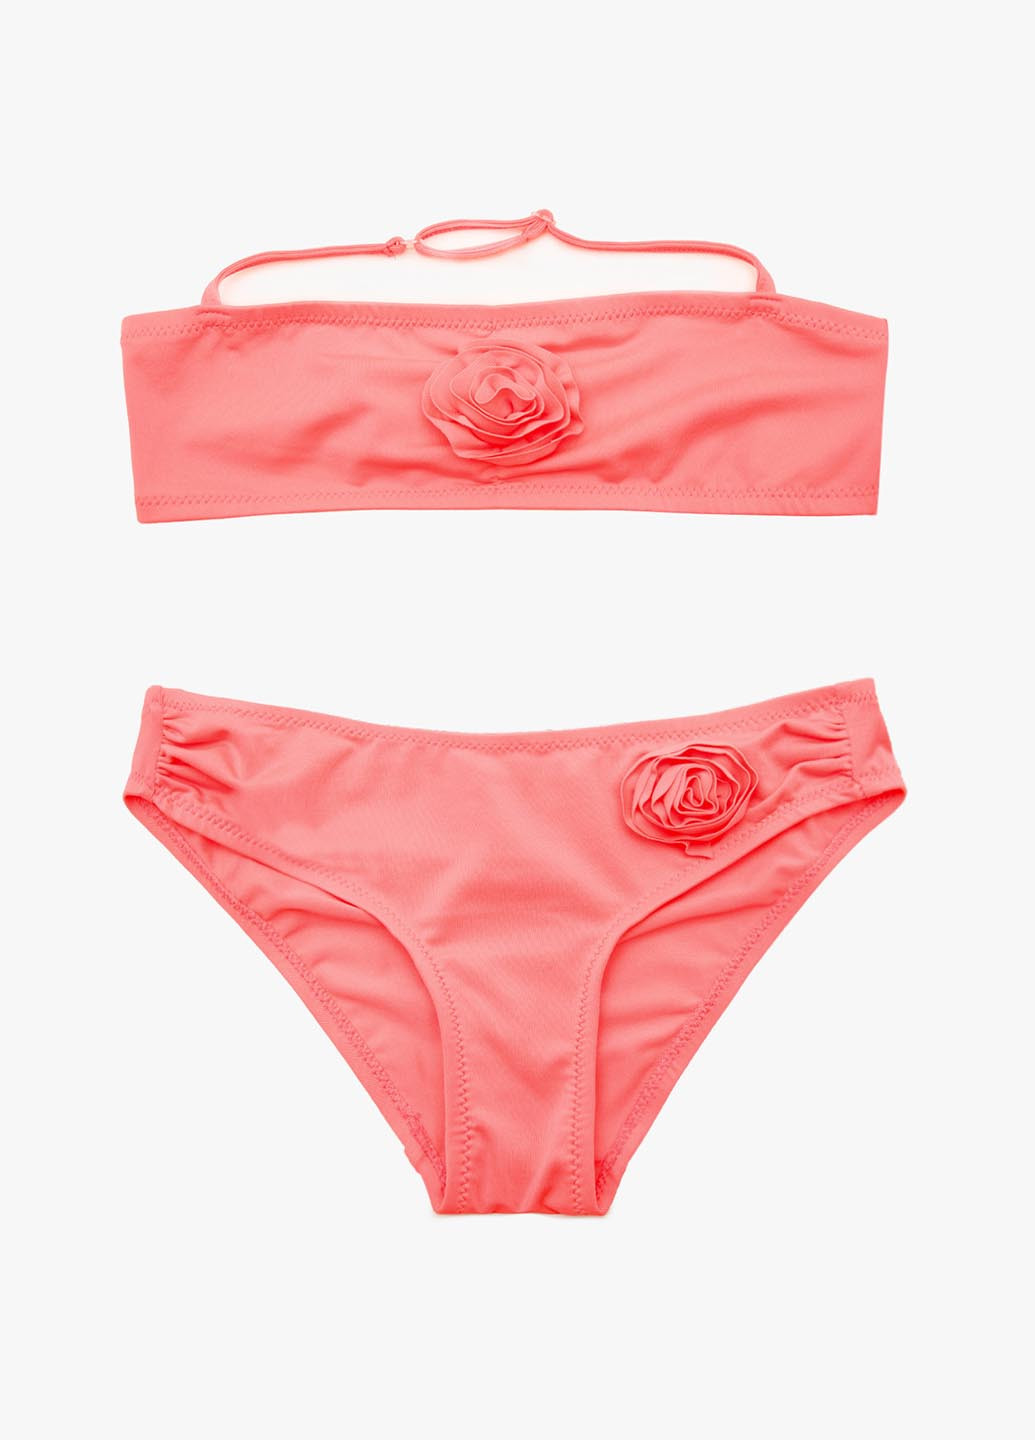 Кислотно-розовый летний купальник (лиф, трусы) бандо, раздельный KOTON